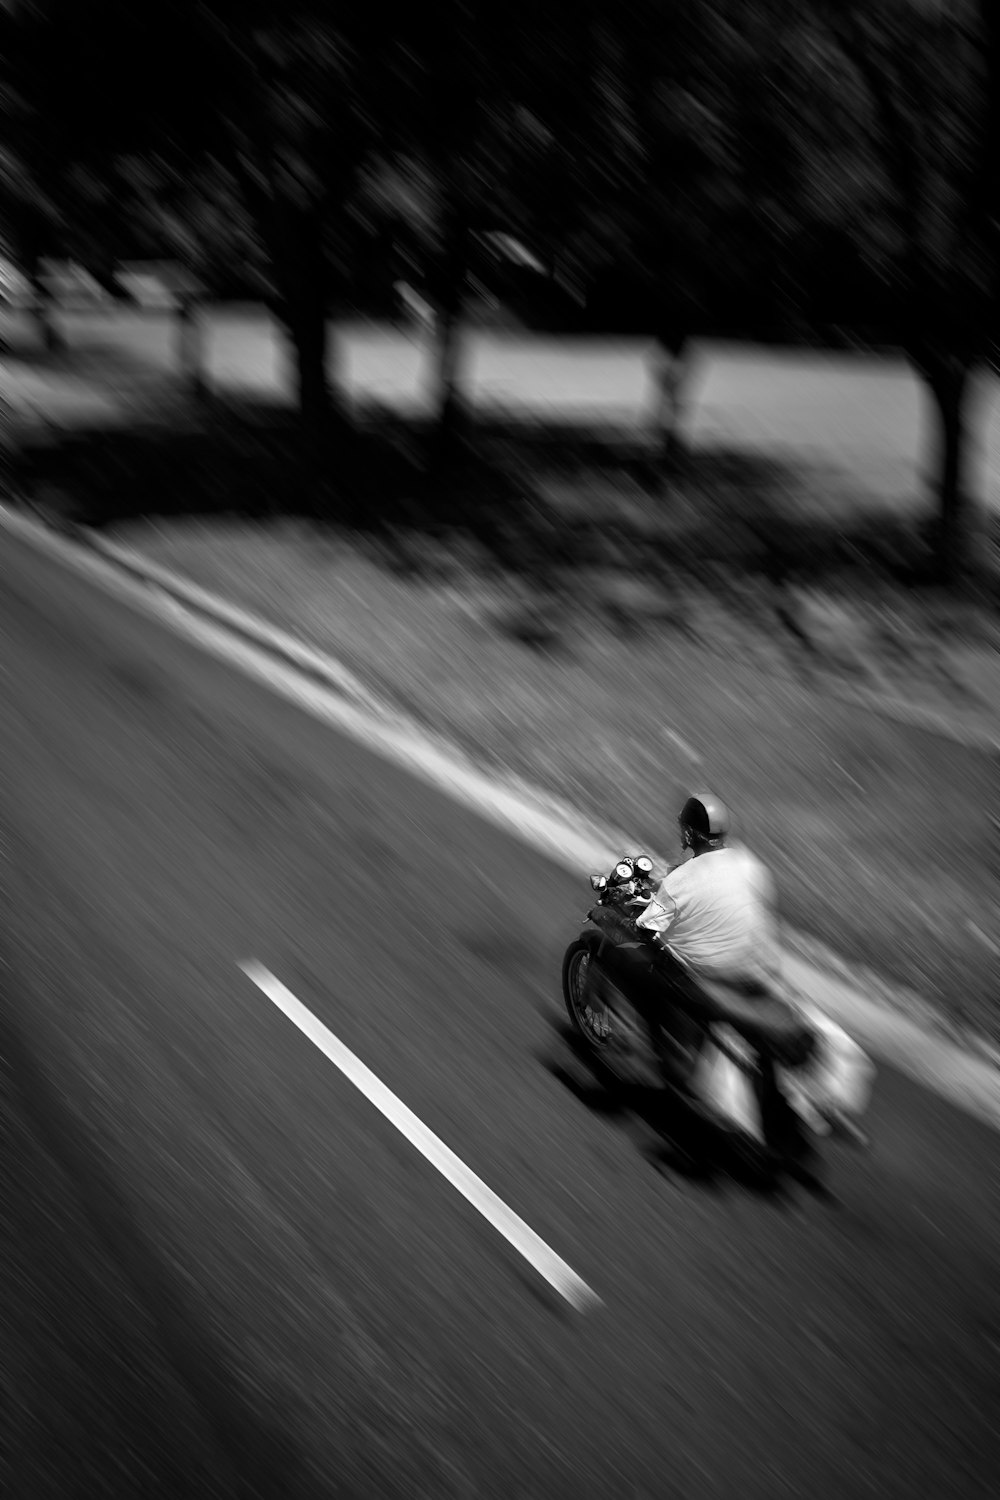 오토바이를 타고 있는 남자의 패닝 사진